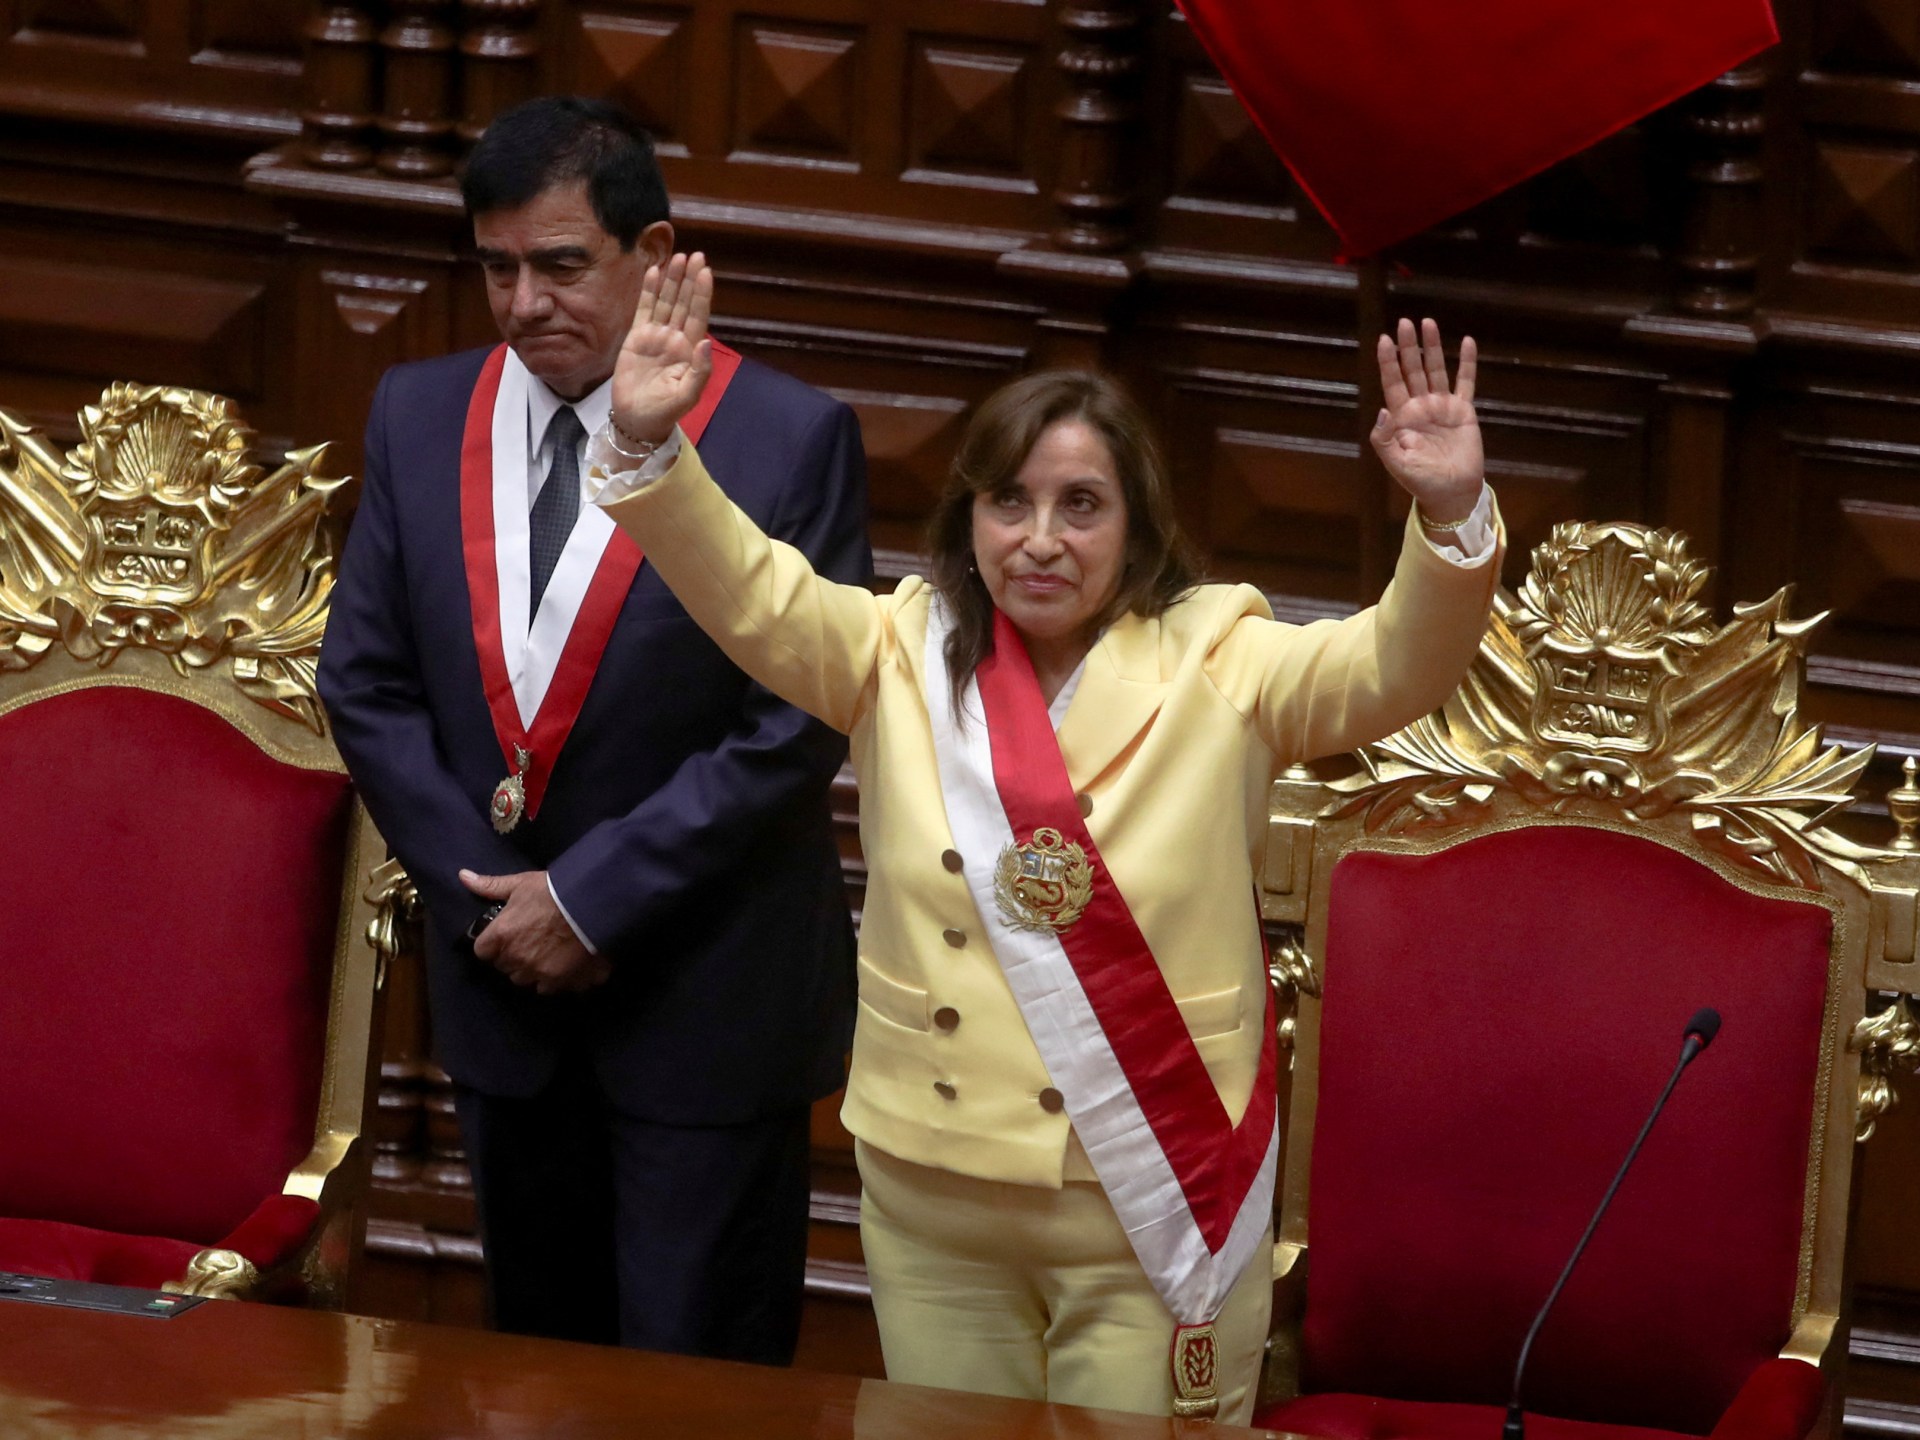 Kongres Peru mengambil sumpah presiden baru setelah pemecatan Castillo |  Berita pemerintah